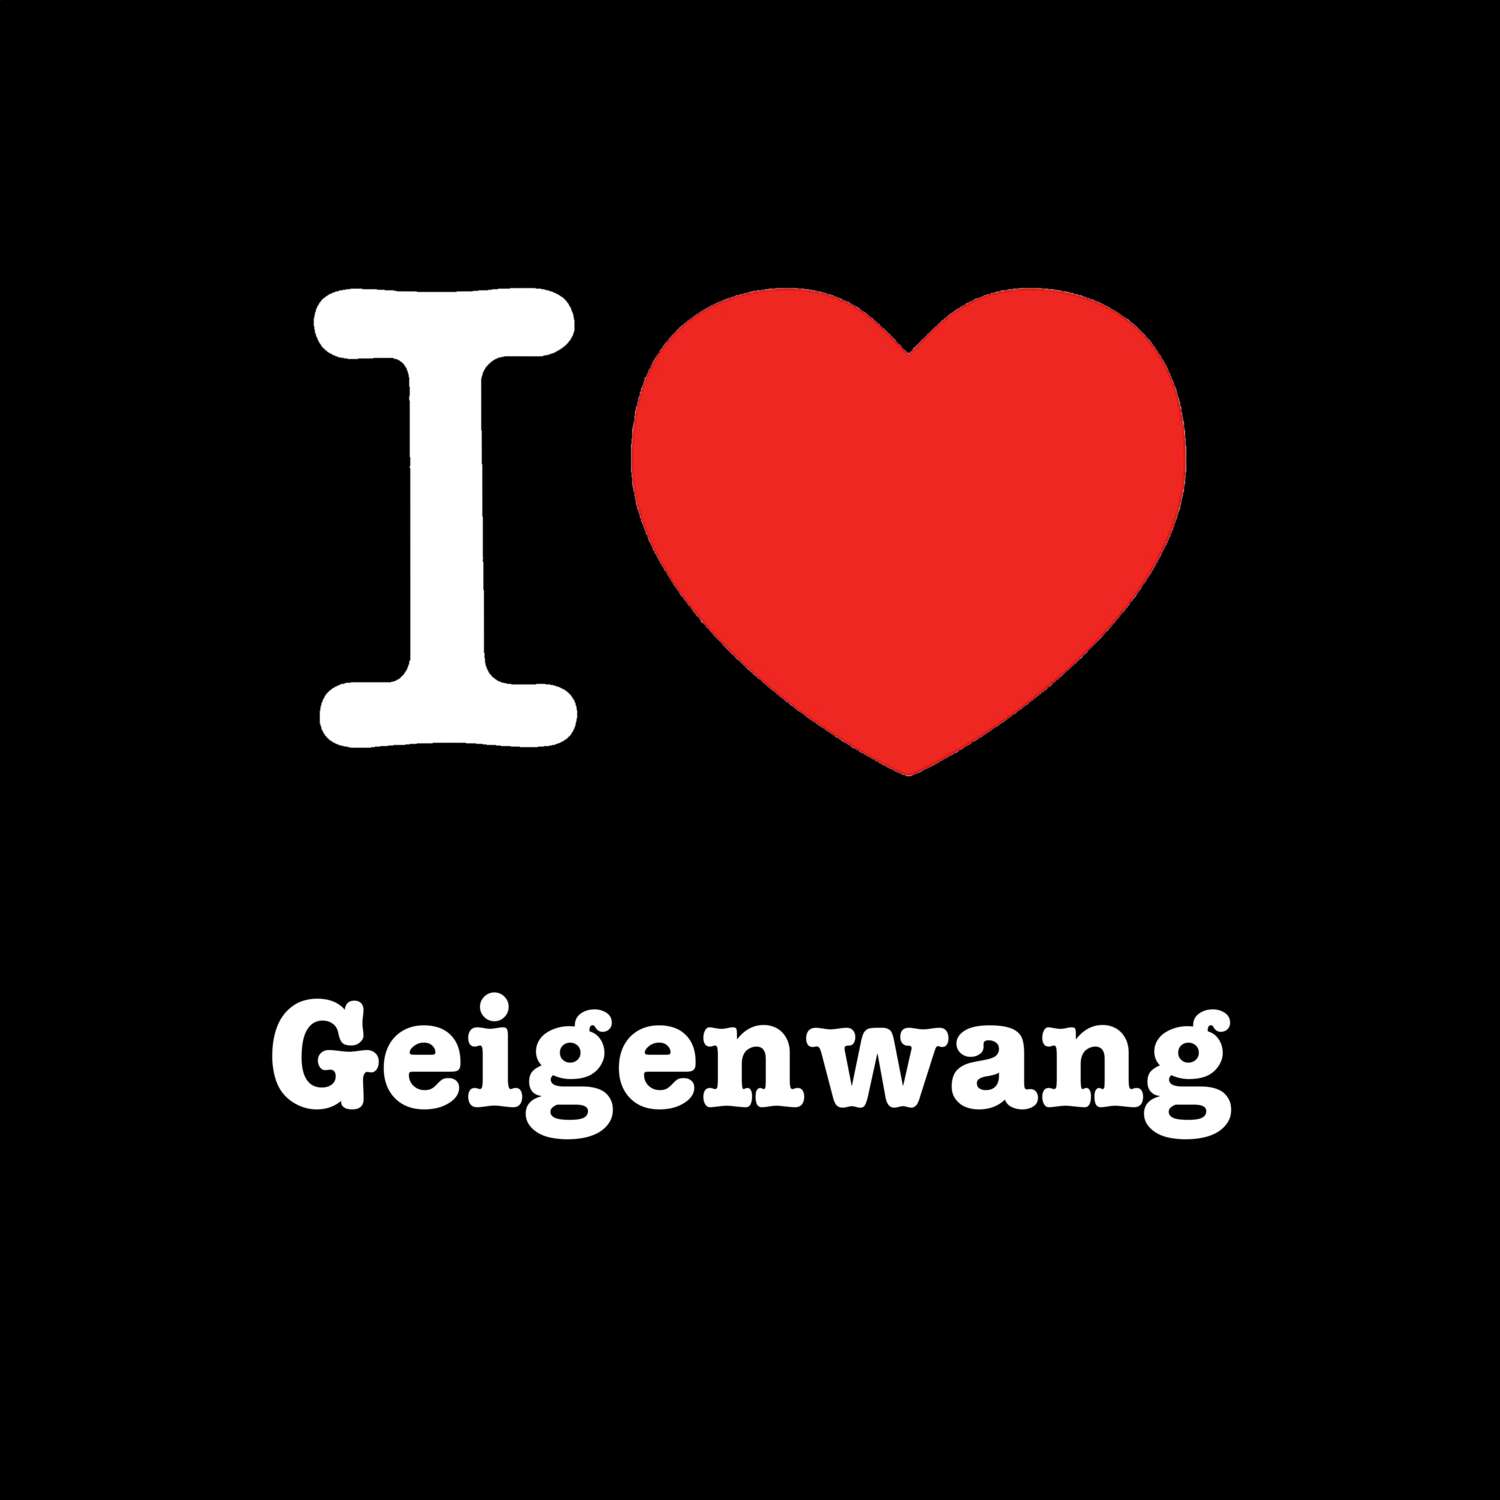 Geigenwang T-Shirt »I love«